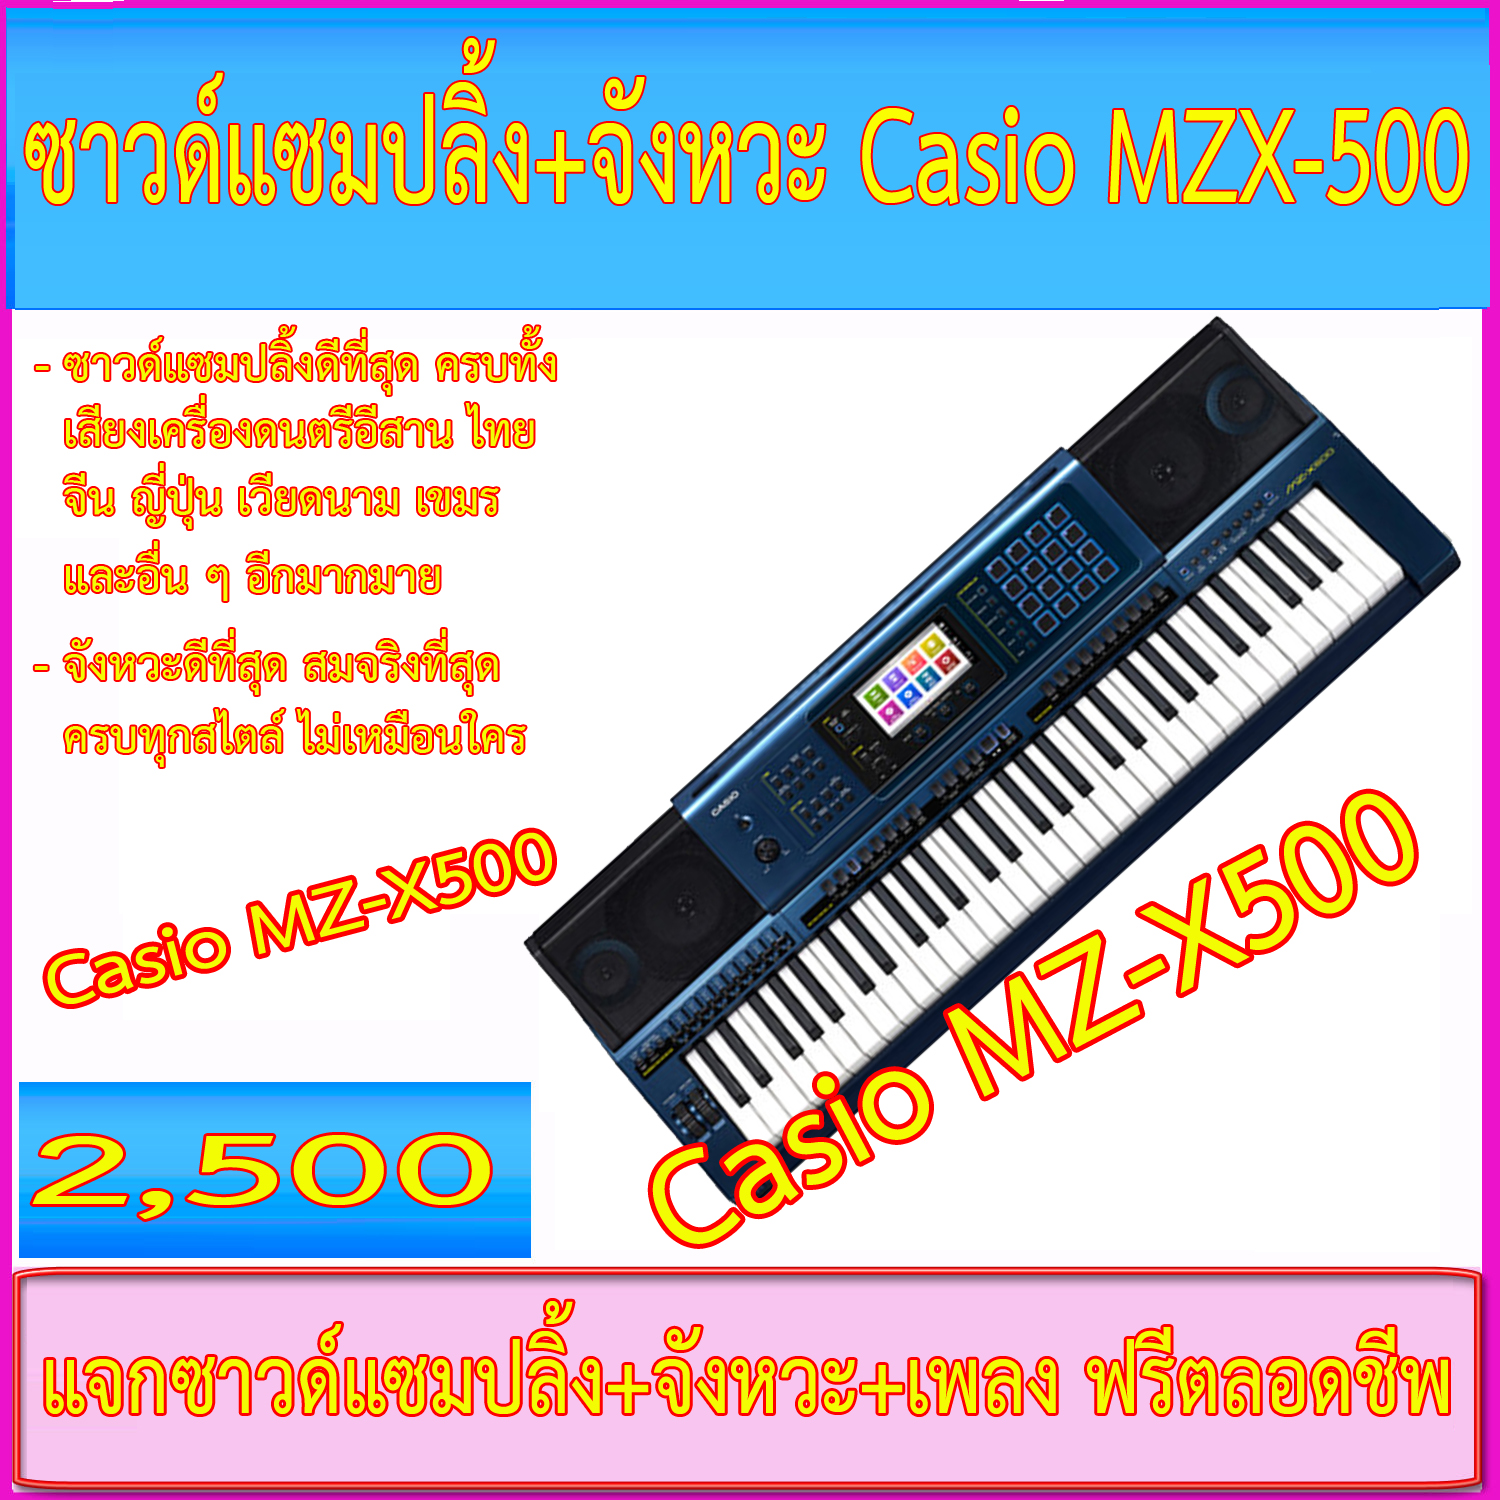 จังหวะ+ซาวด์แซมปลิ้งคีย์บอร์ด Casio MZ-X500+โน้ตเพลงหลายพันเพลง อัพเดทฟรีตลอด